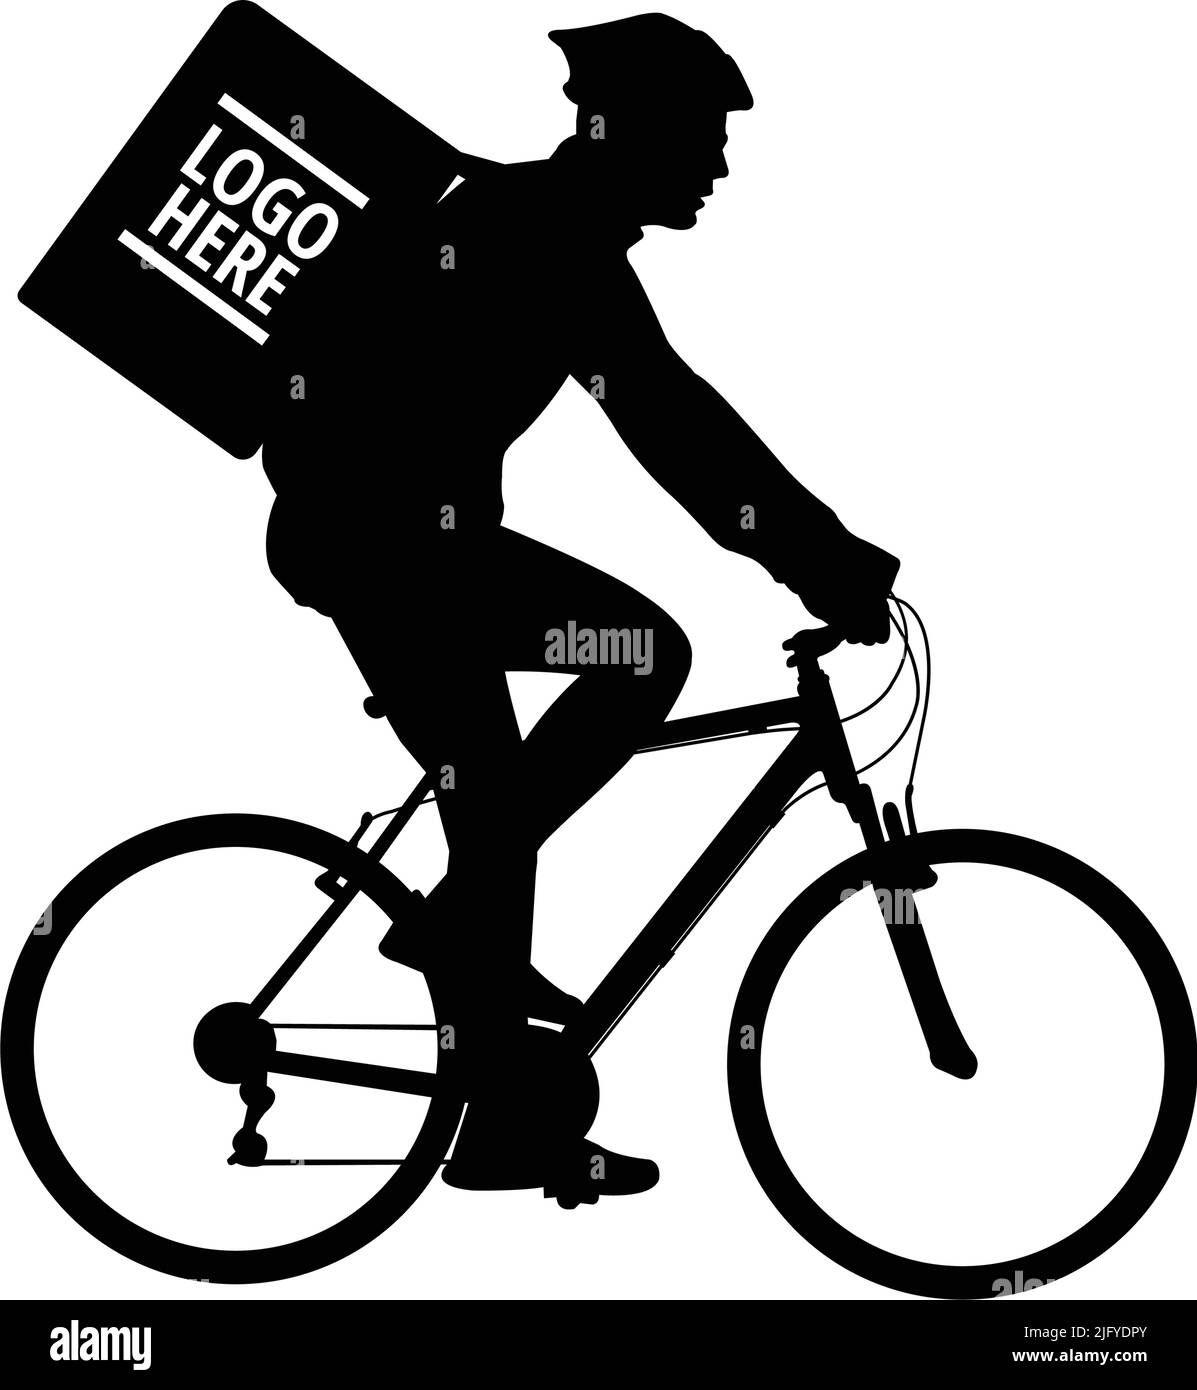 Servicio de mensajería en bicicleta Imágenes de stock en blanco y negro -  Alamy